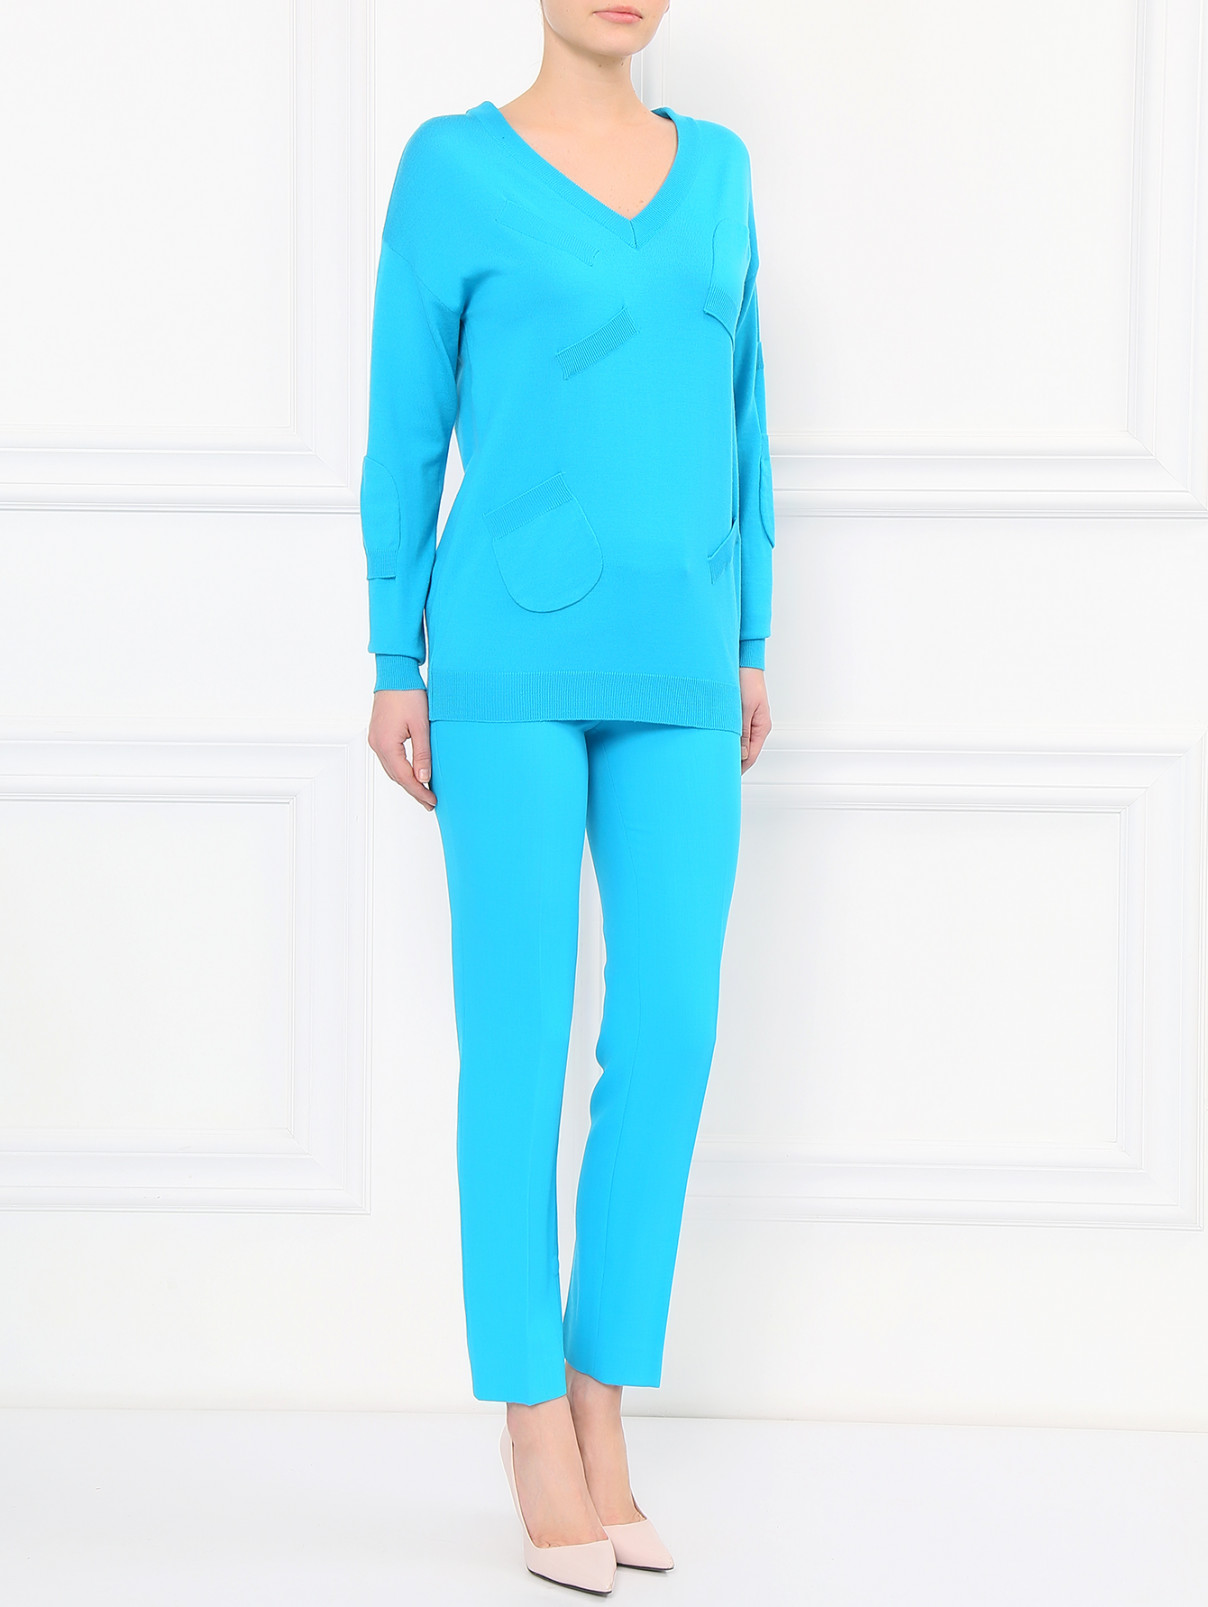 Удлиненный джемпер из шерсти с V-образным вырезом Moschino Boutique  –  Модель Общий вид  – Цвет:  Синий